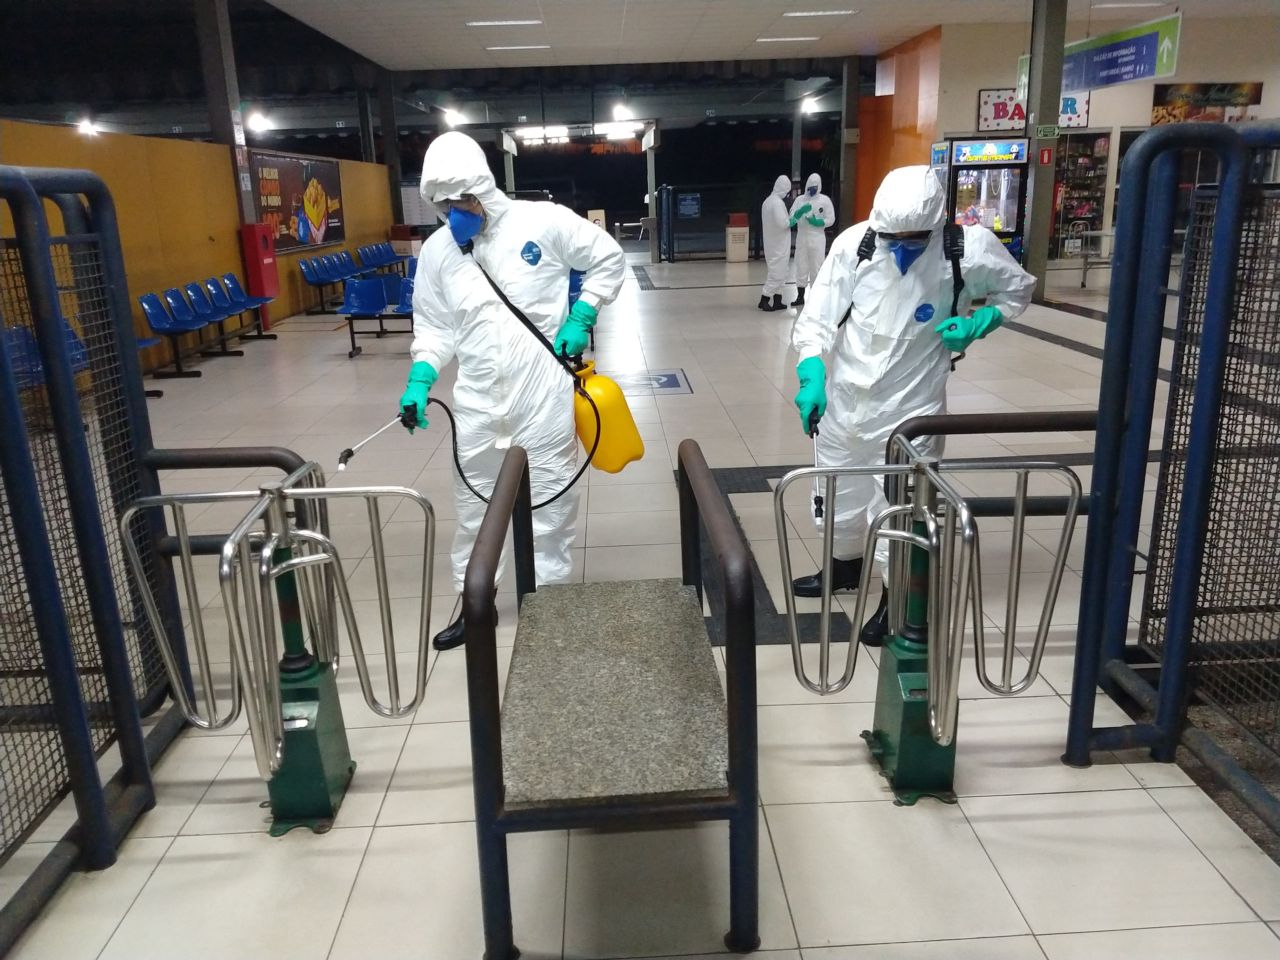 Exército Brasileiro em operação de higienização em Rodoviária de Natal(RN)